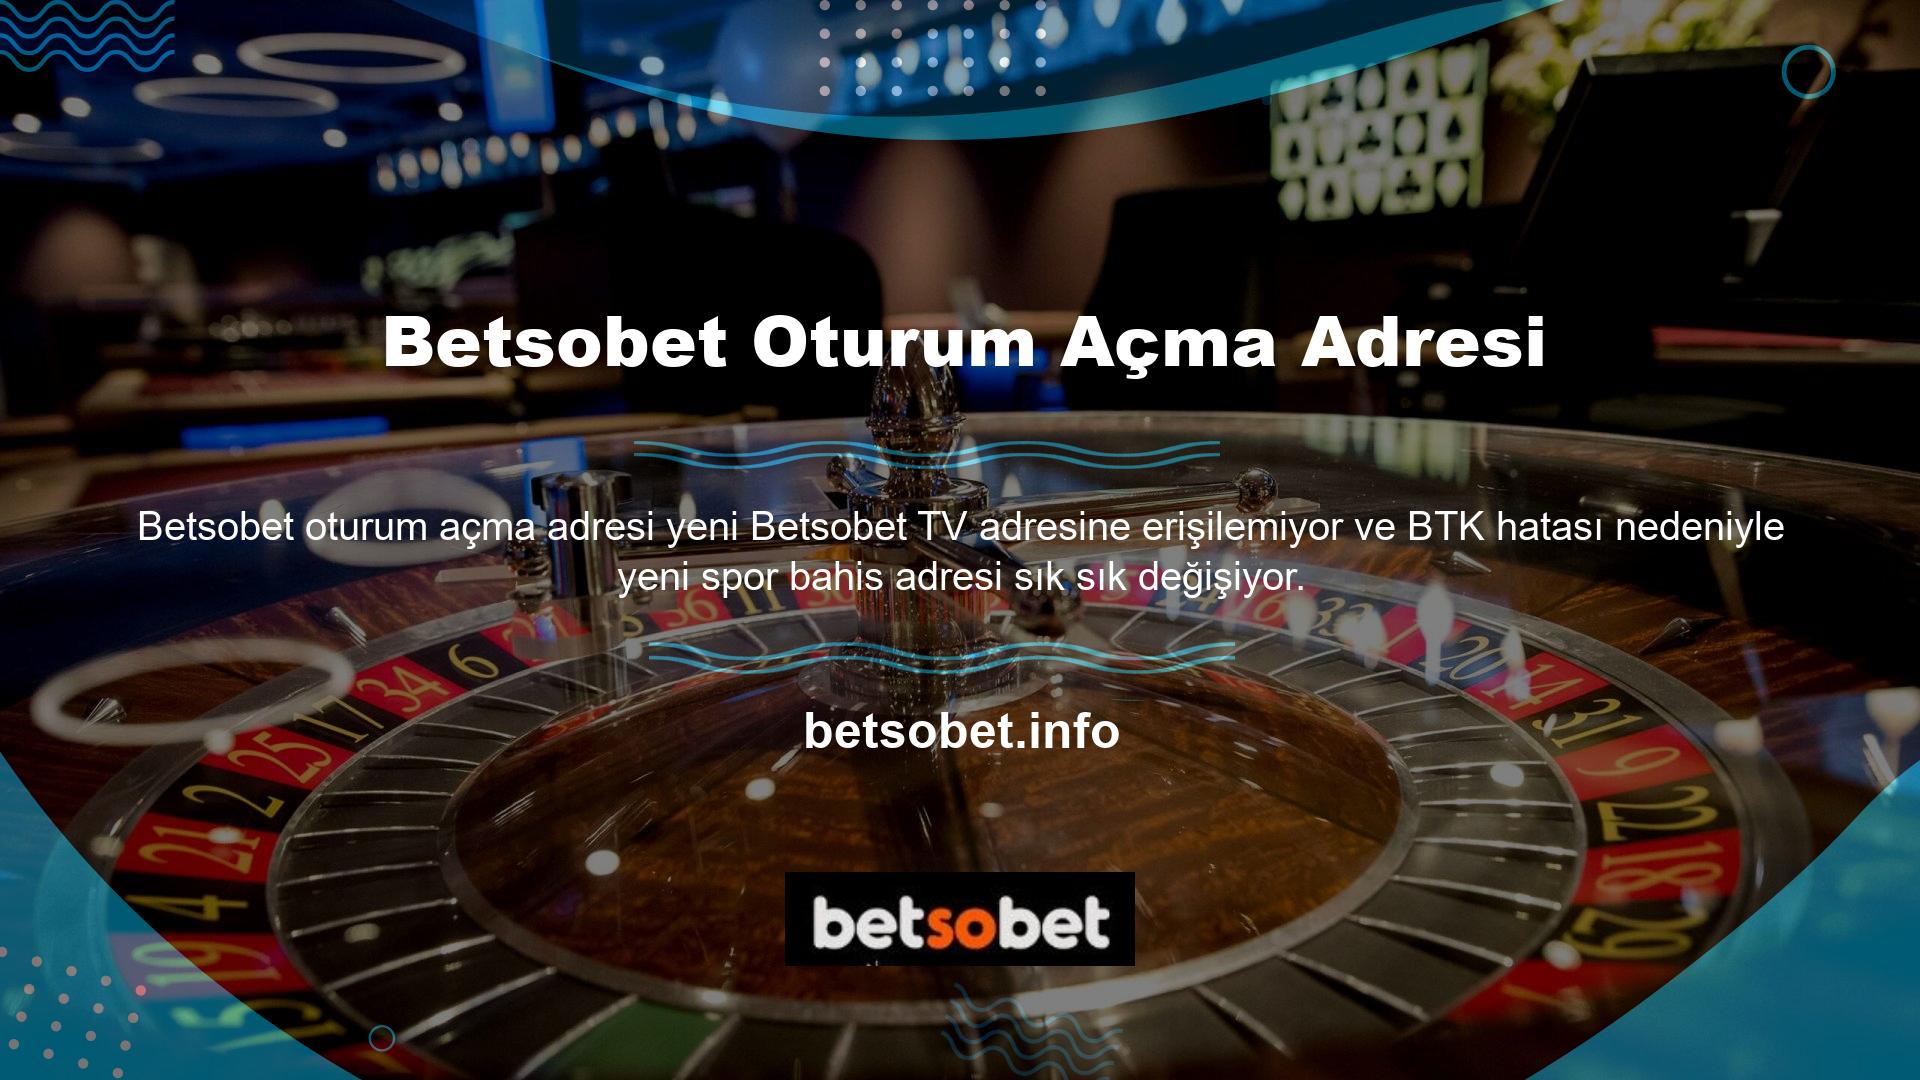 BTK, site Türk casino yasasına göre yasa dışı olduğu için yasaklandı